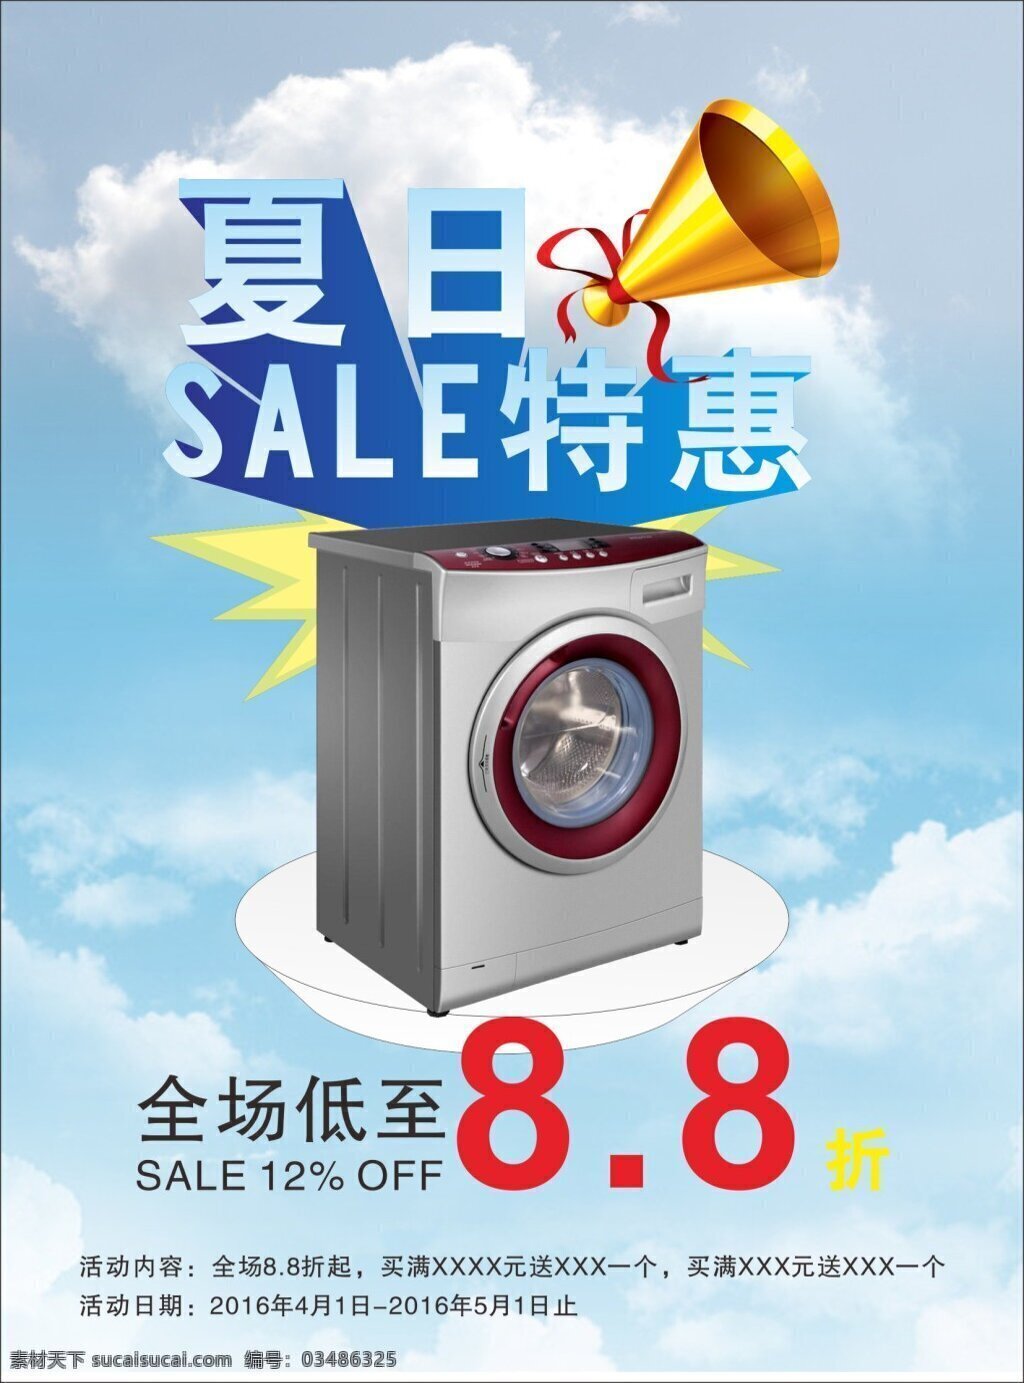 夏日特惠 招生宣传单 打折 空调 洗衣机 惊喜 轻凉 白色